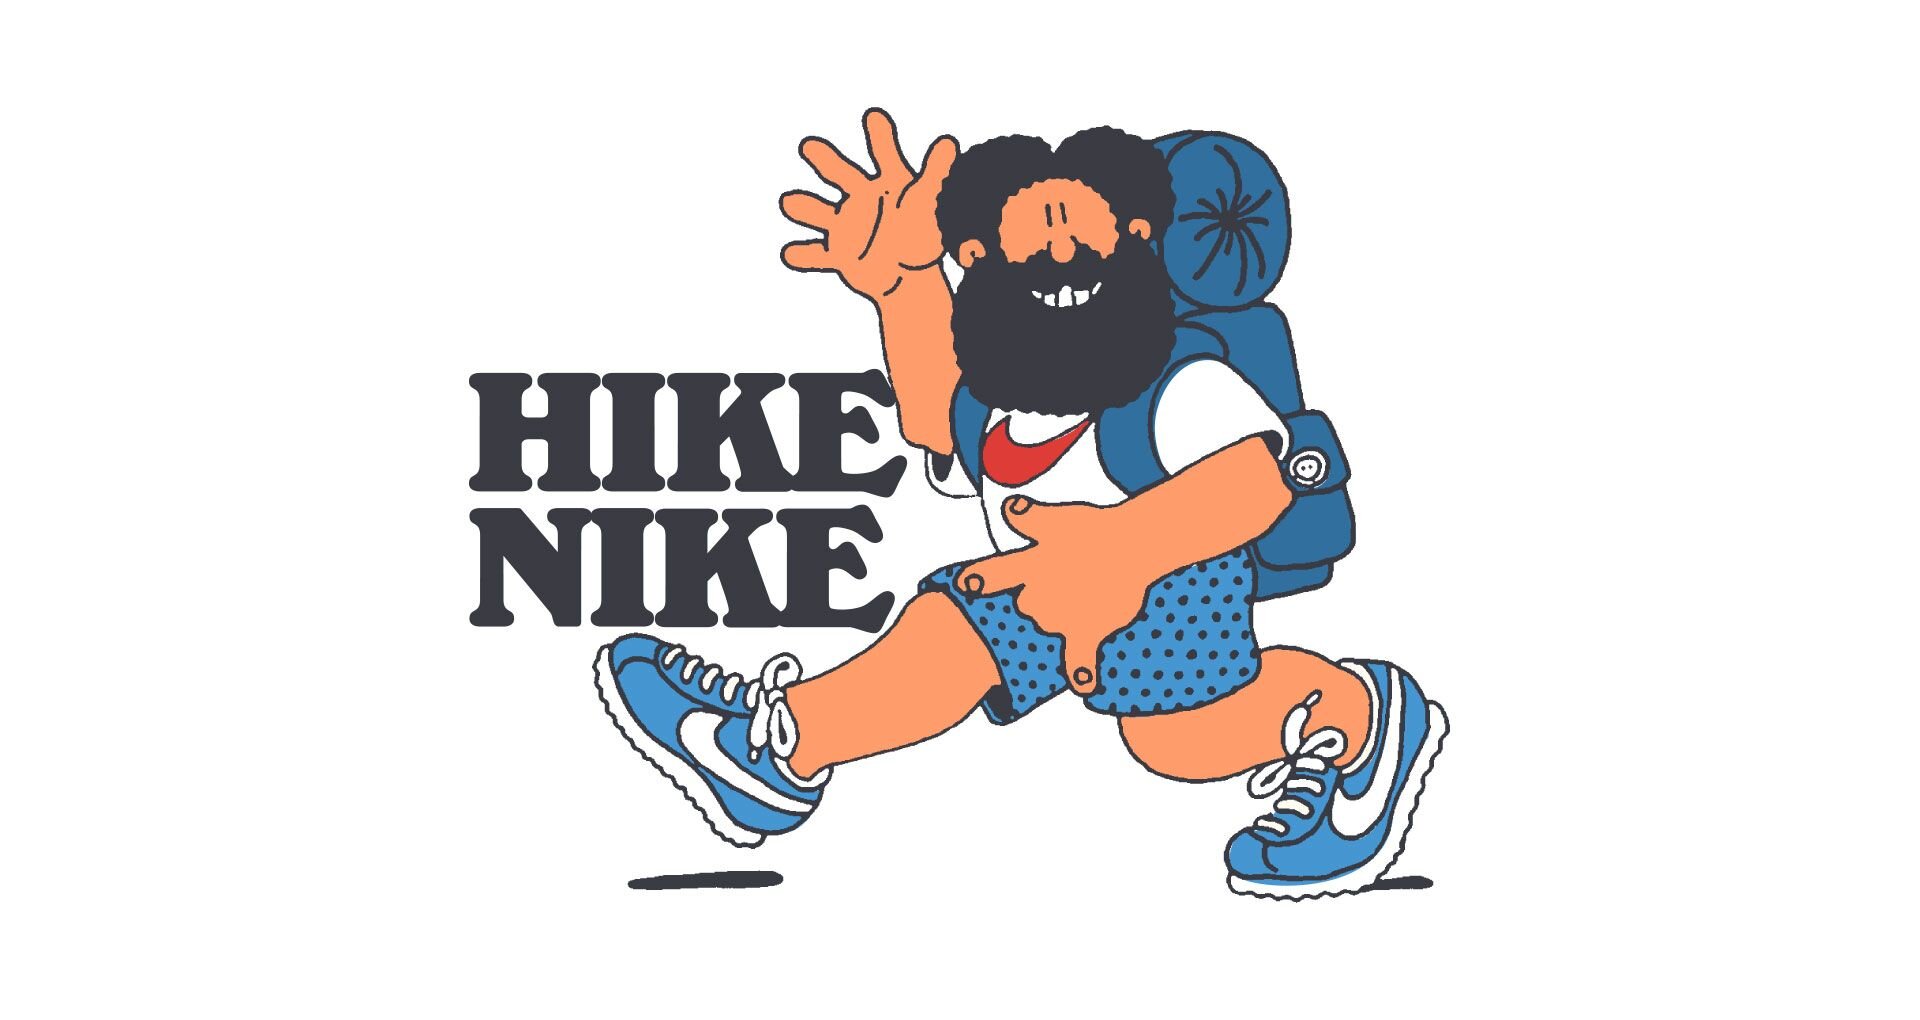 nike take a hike